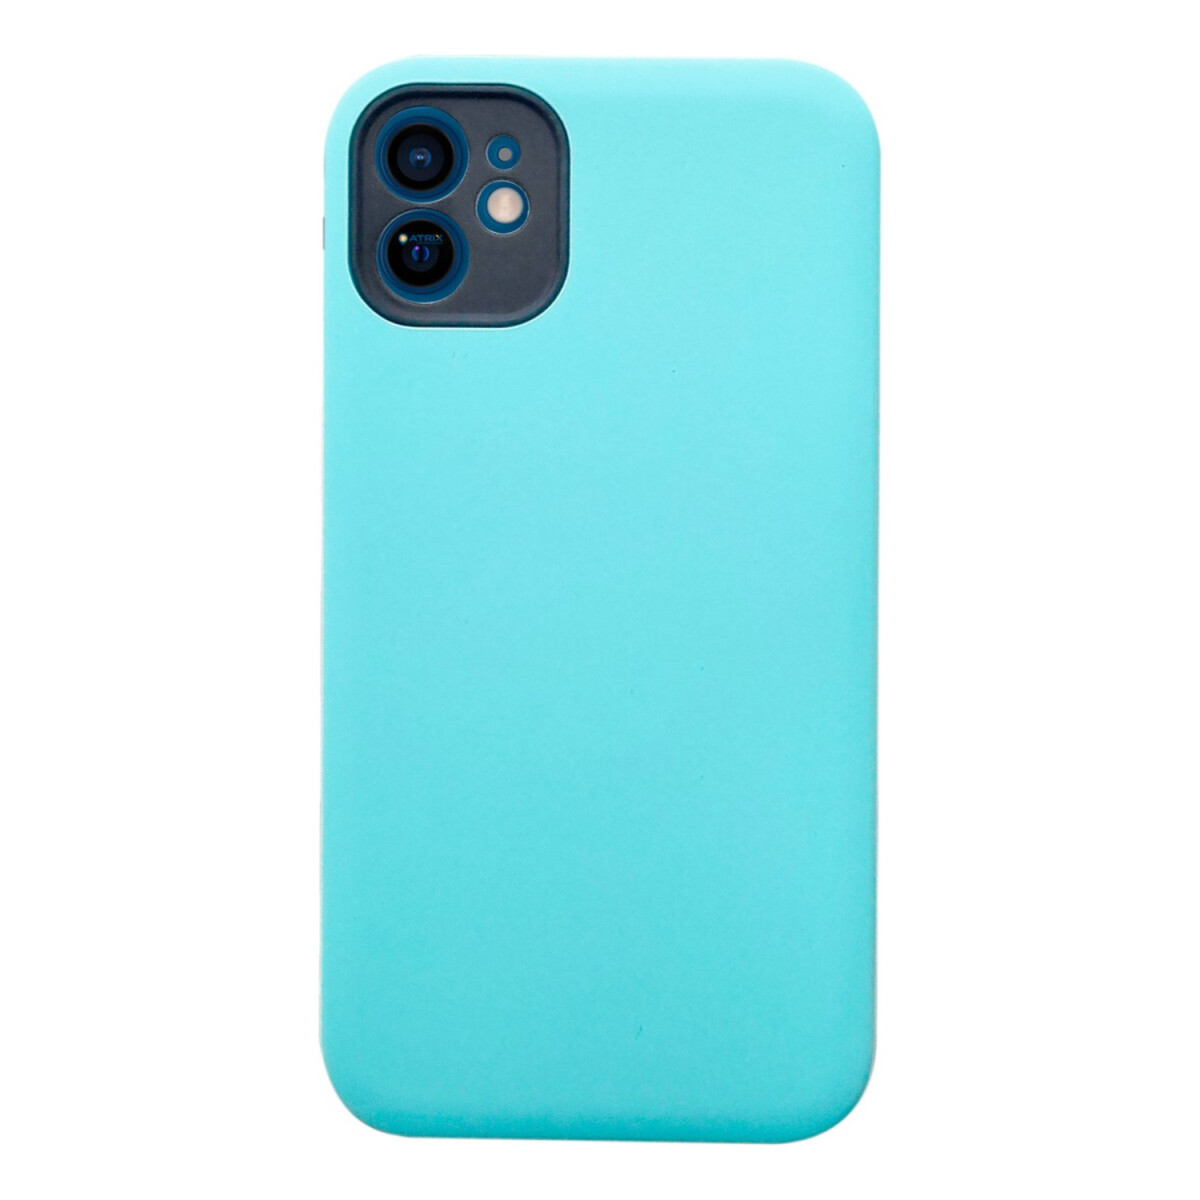 Carcasa Celular Funda Protector Case Silicona Para iPhone 11 - Variante Color Verde 